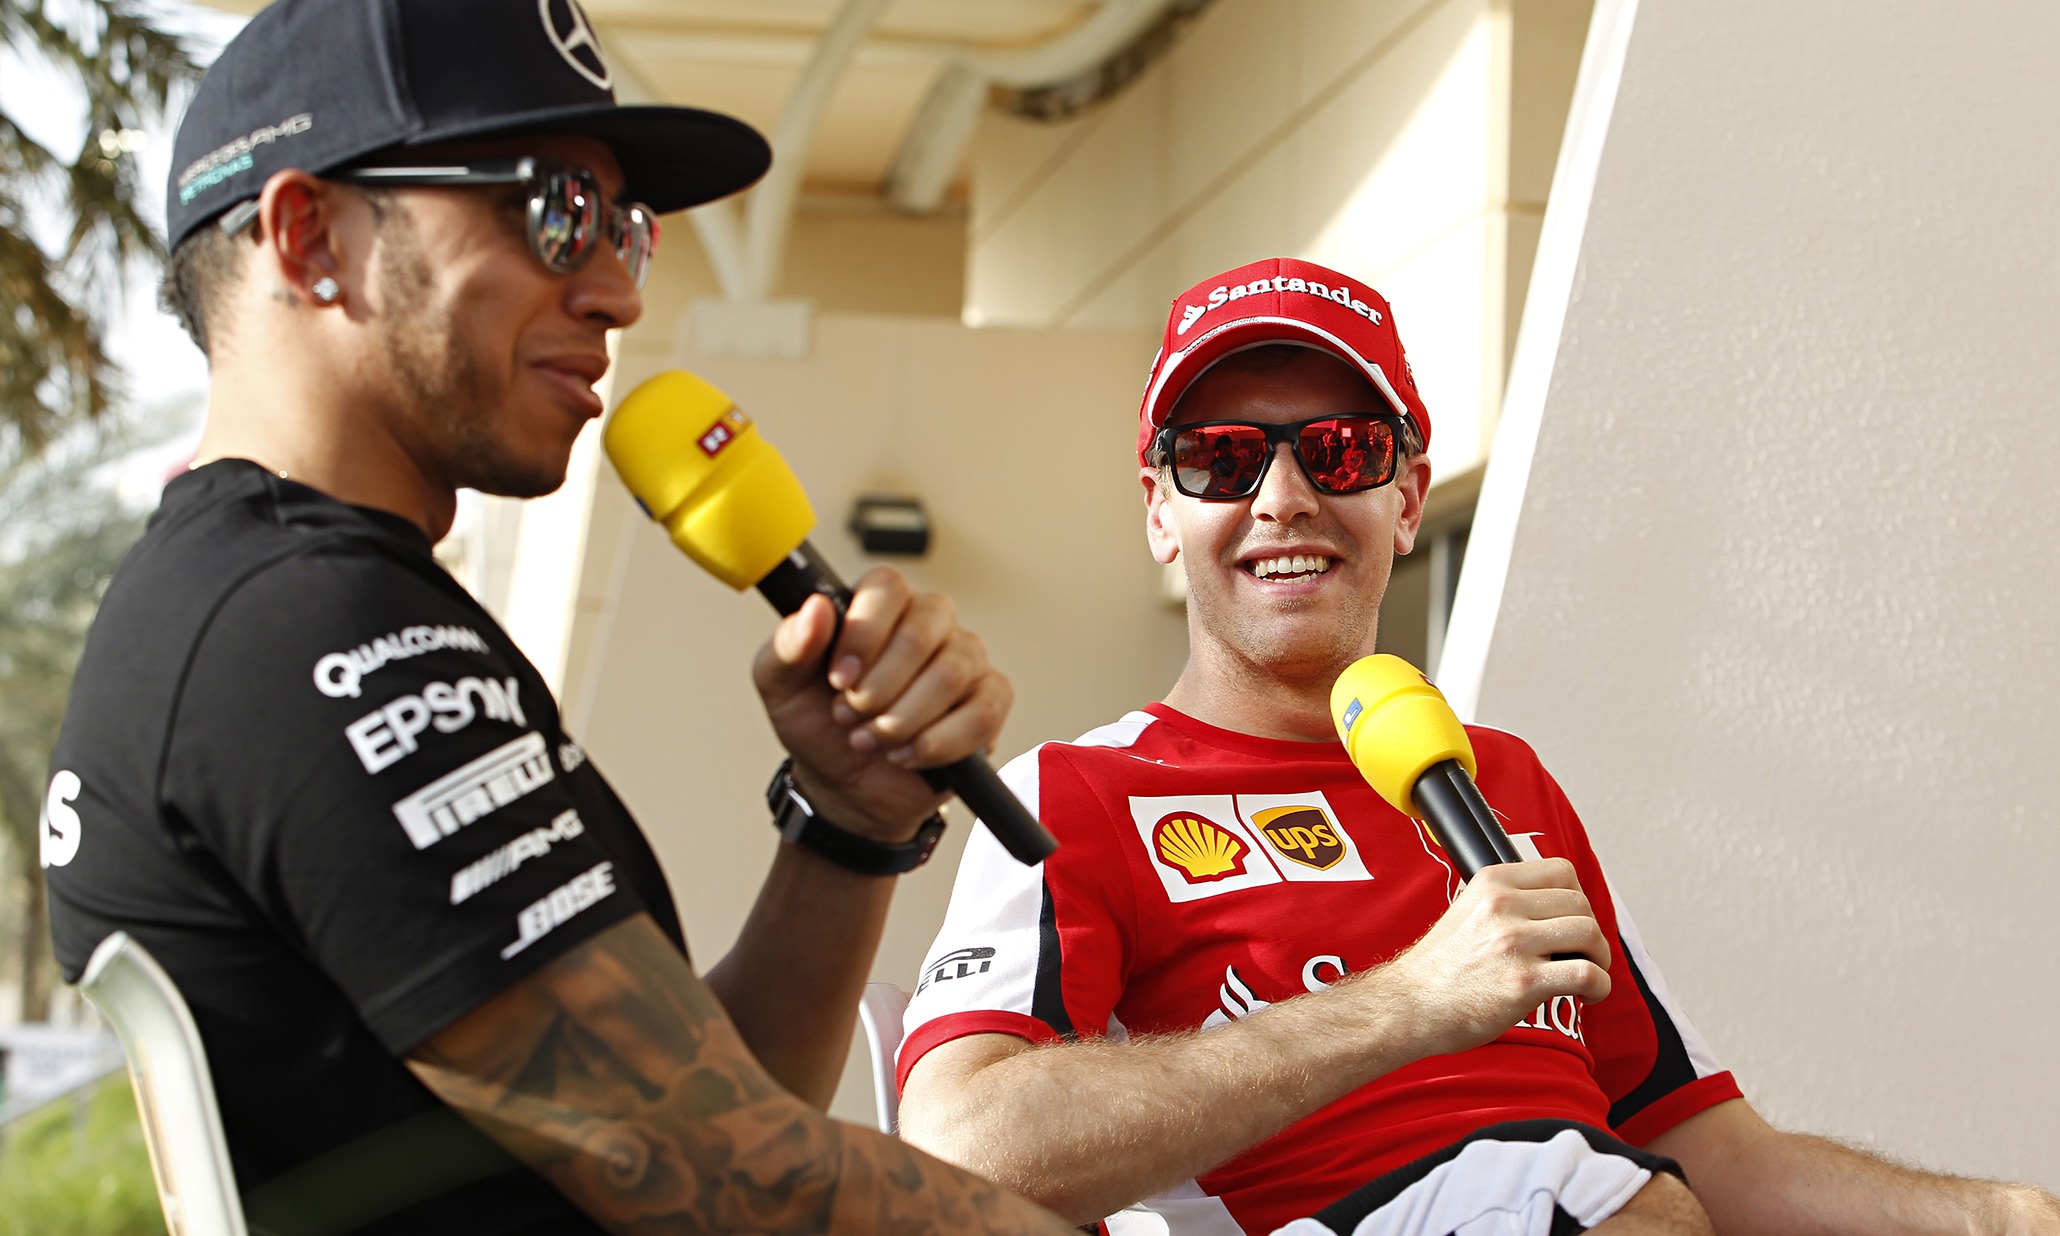 Sebastian-Vettel-Lewis-Ha-009.jpg